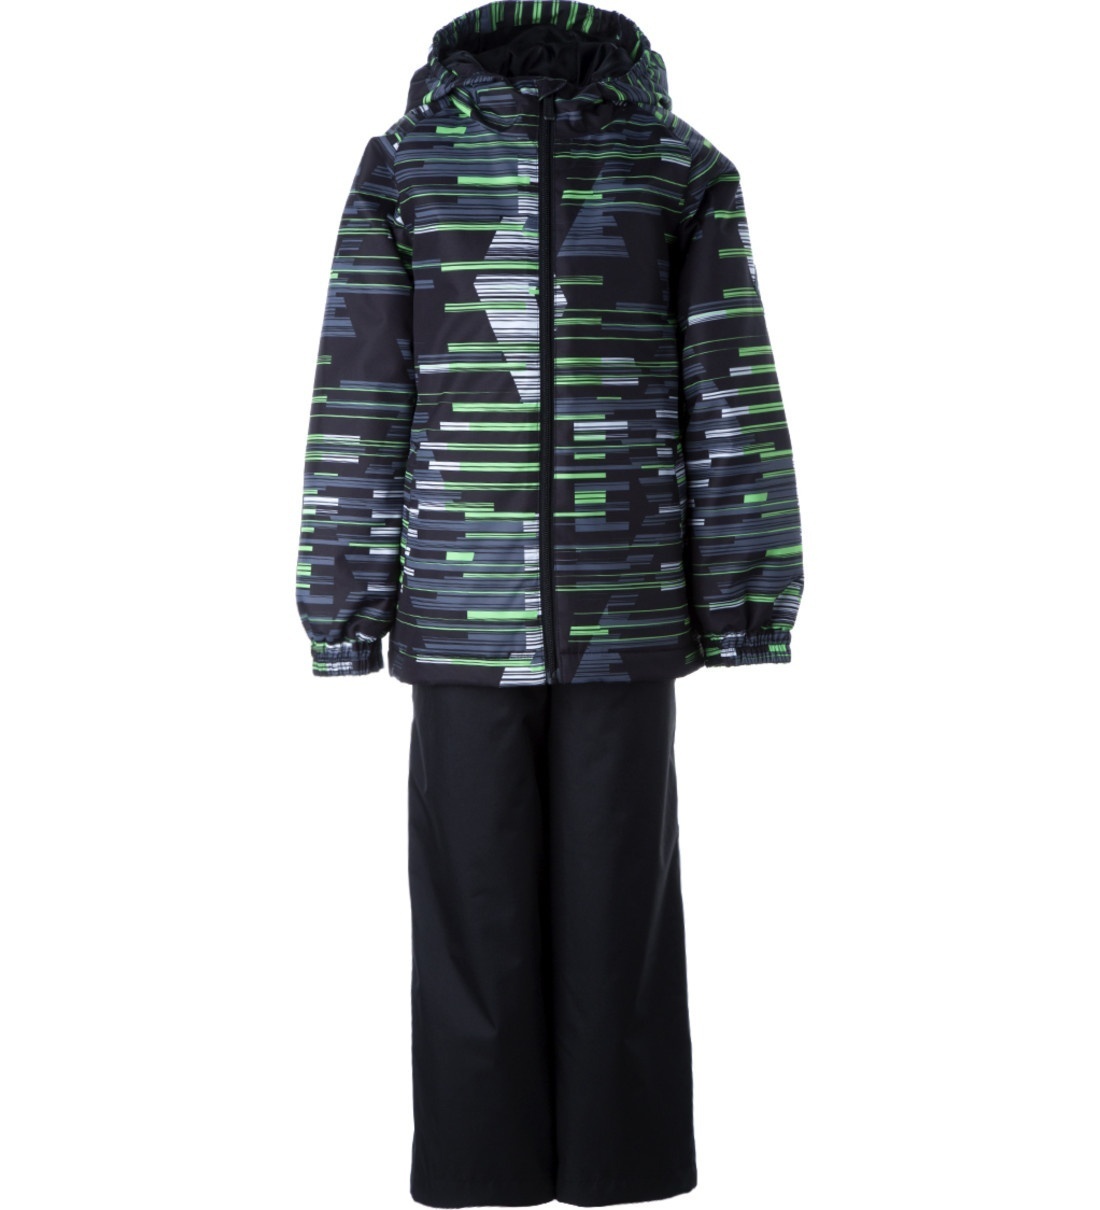 Комплект верхней одежды детский Huppa REX, салатовый, черный, 110